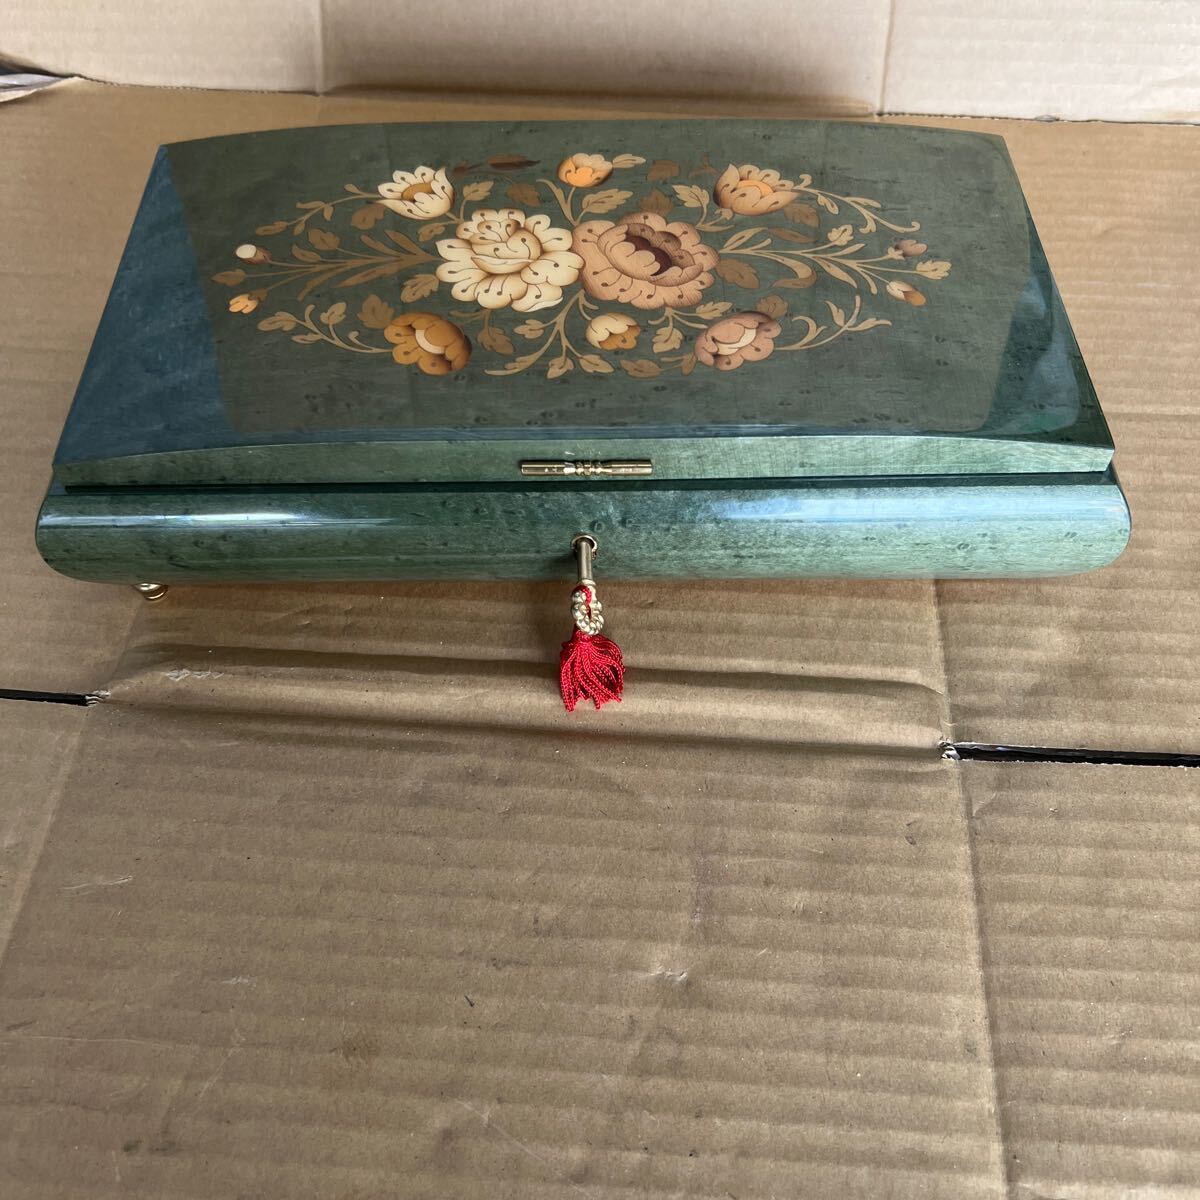 93 ゆうパック着払い発送 中古 現状品 LADOR ジュエリーボックス BOX 宝石箱 イタリア製 SWITZERLAND スイス オルゴール 鍵付 の画像2